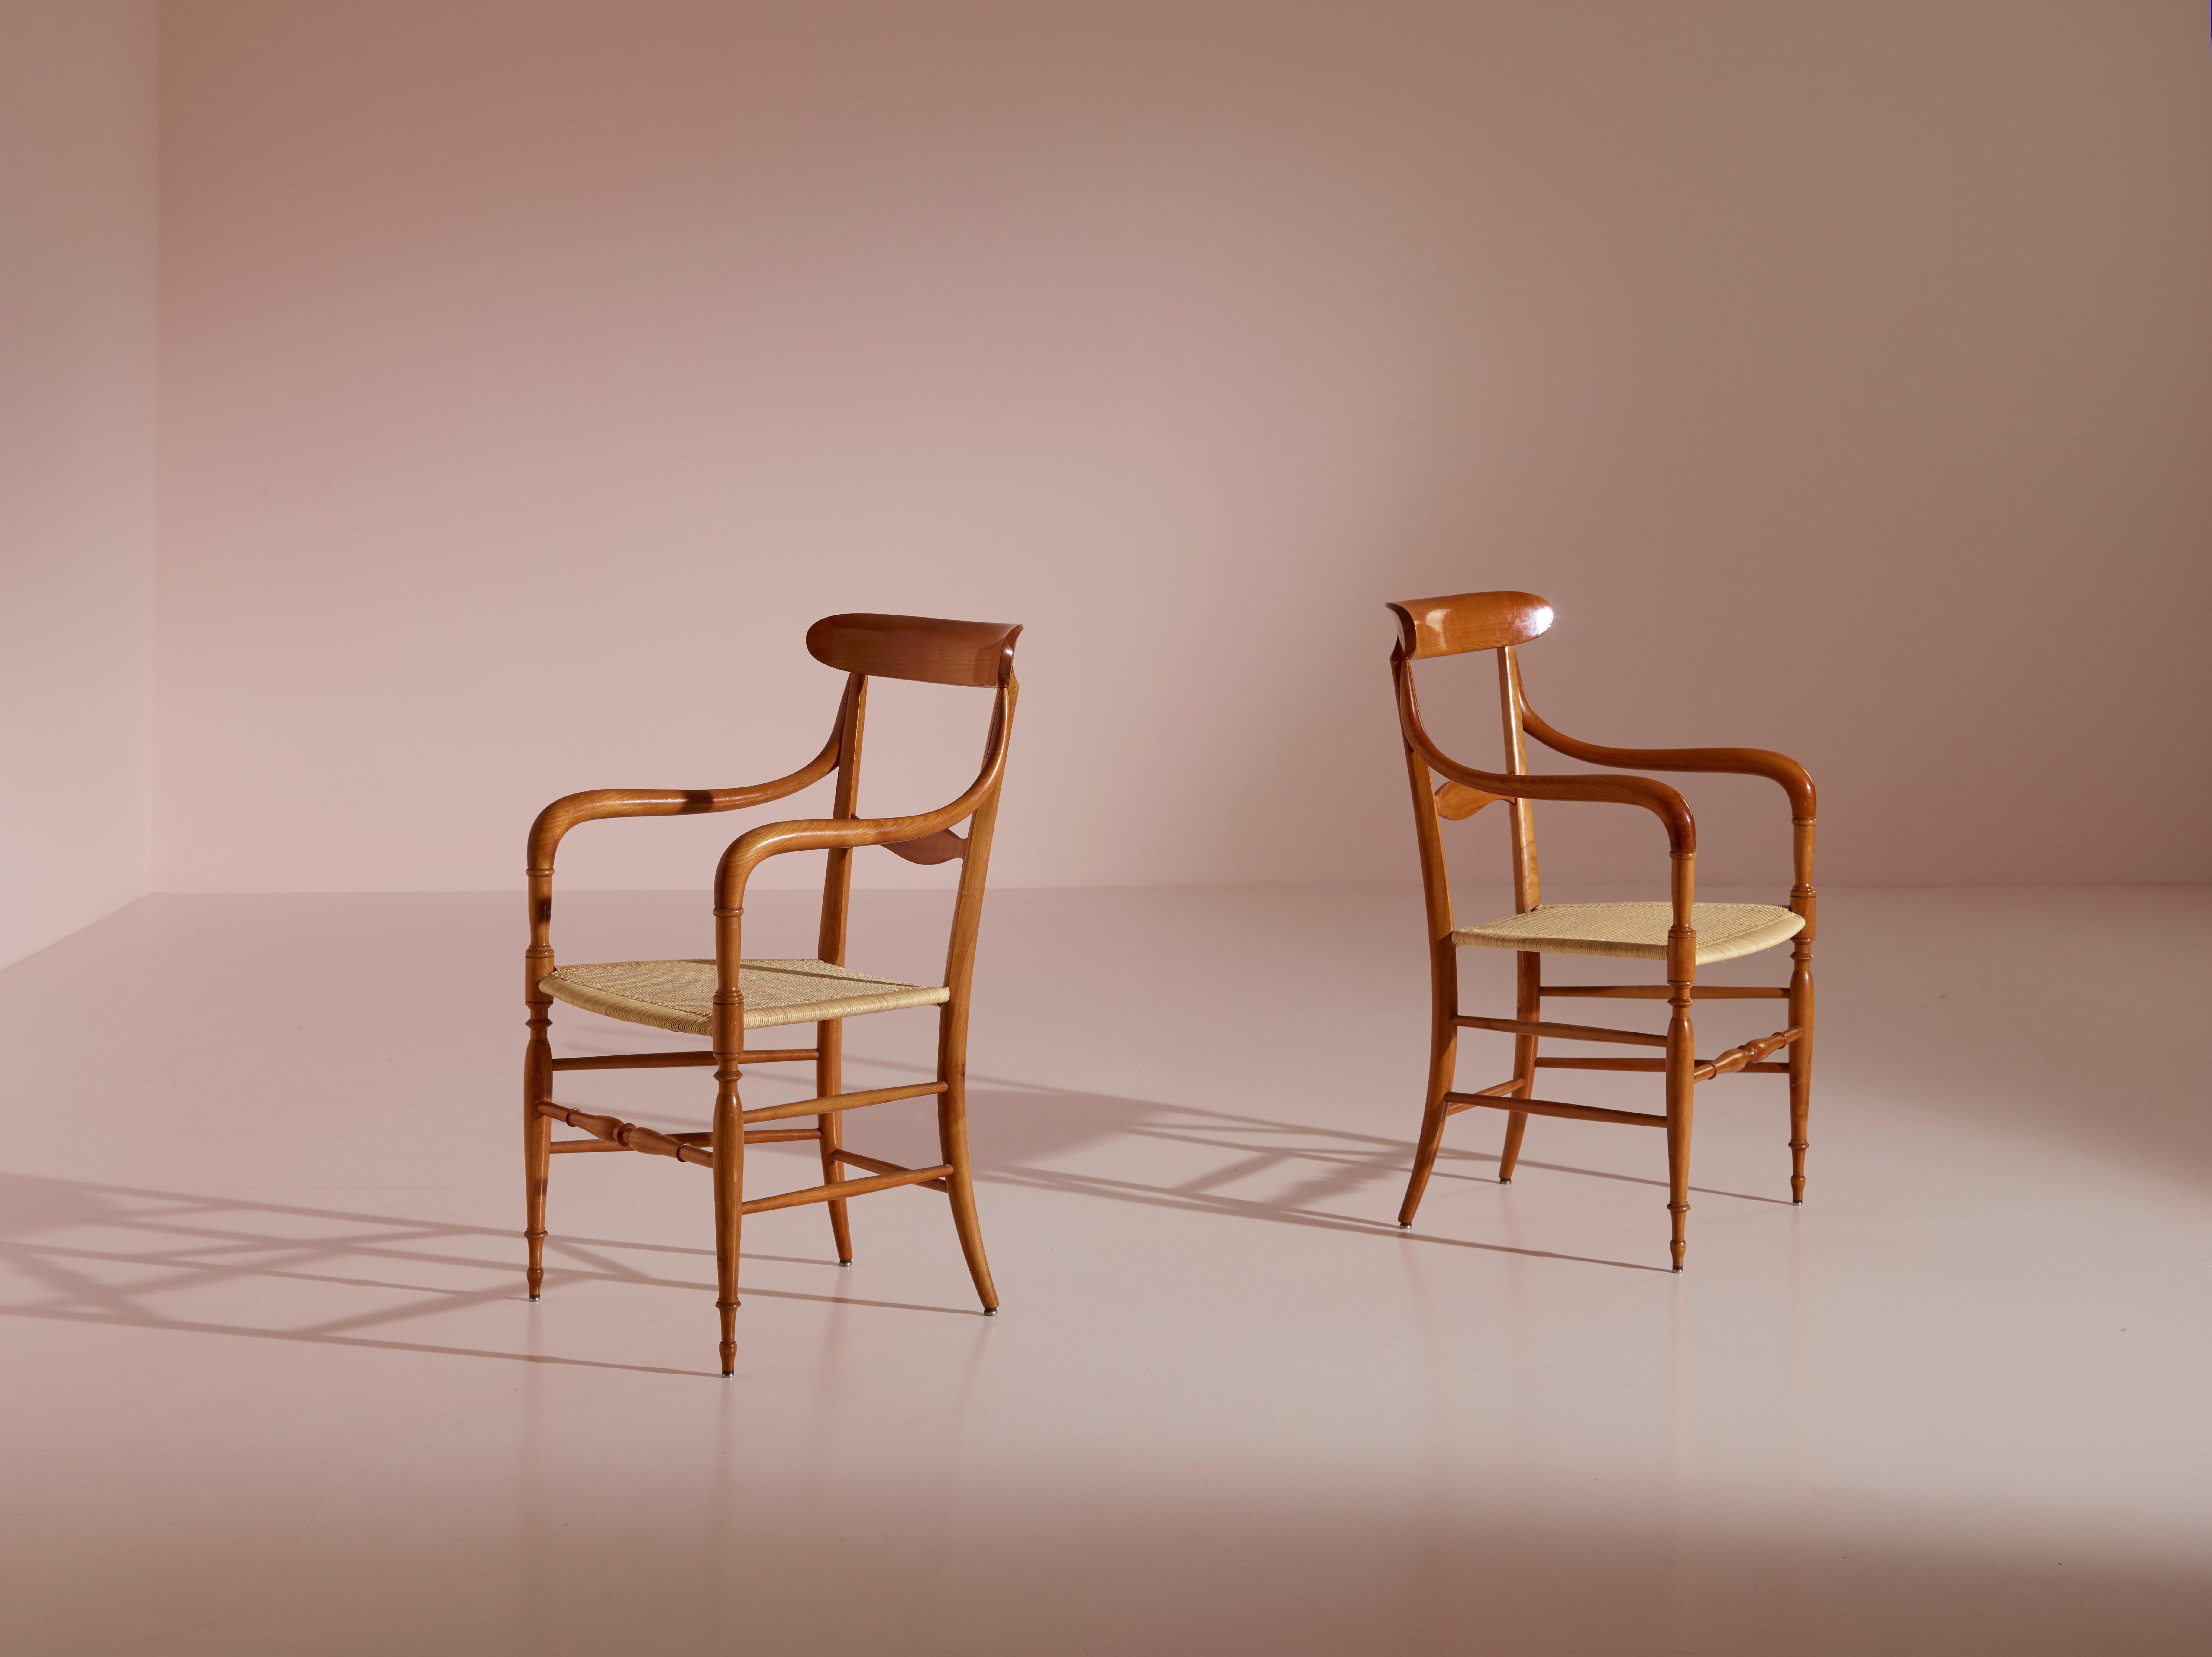 Ein exquisites und seltenes Sesselpaar, bekannt als das Modell 